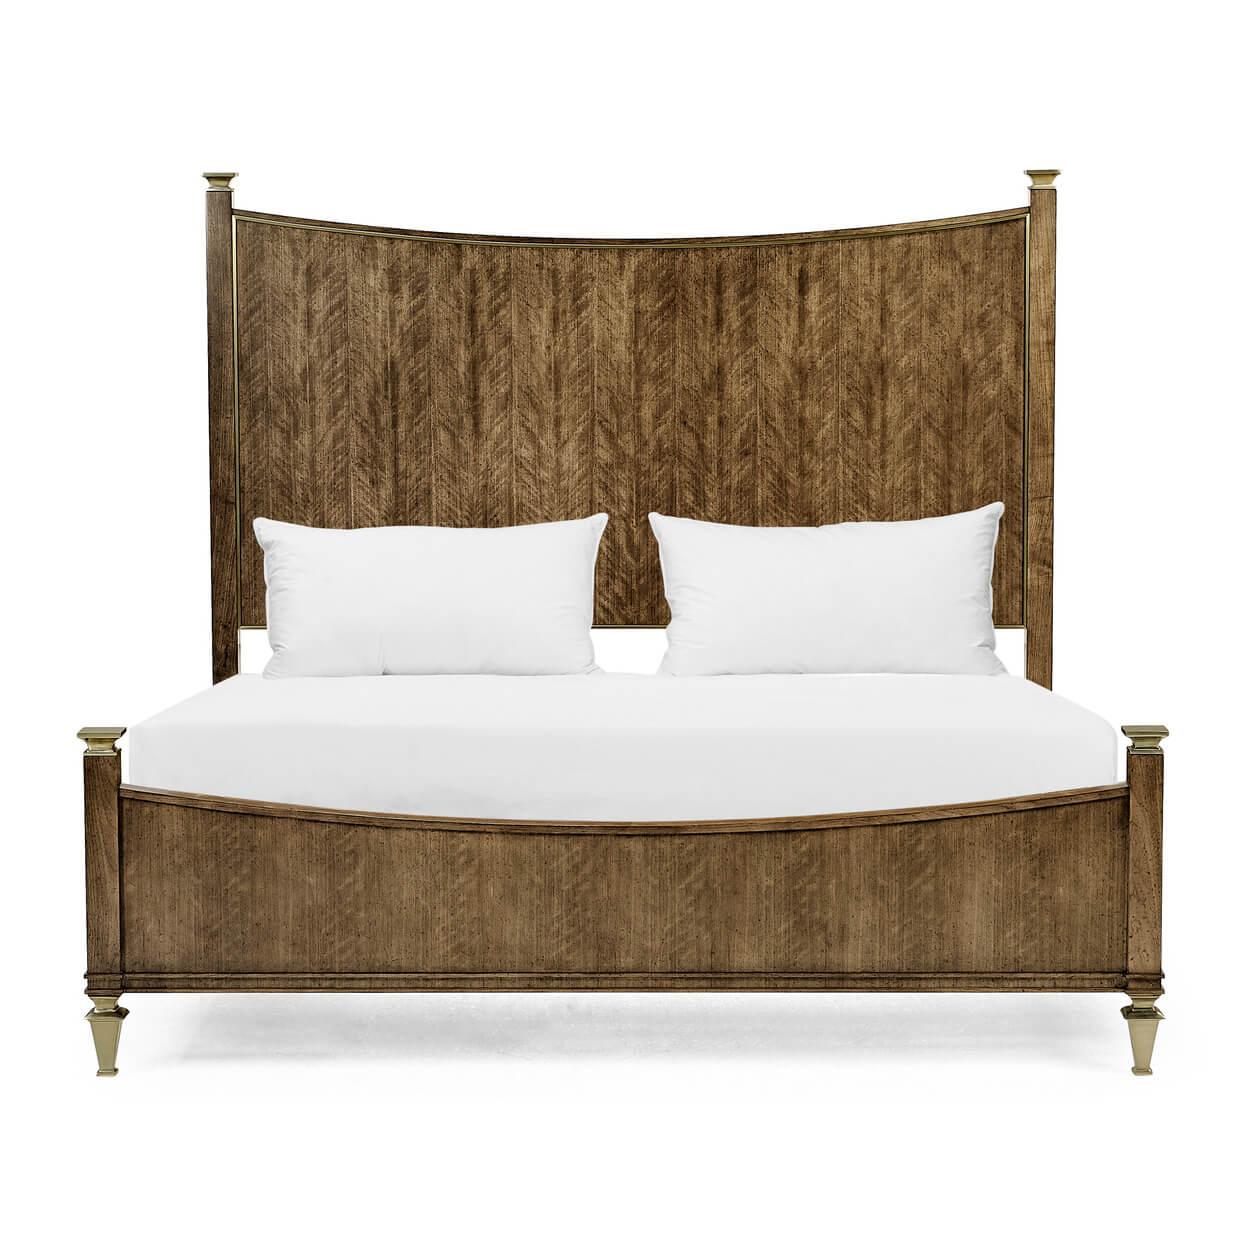 Ein klassisches europäisches Bett aus gevierteltes Nussbaumholz in Kingsize-Größe mit schrägem Kopf- und Fußteil, mit profilierten Kanten und quadratischen, konischen Füßen.

Abmessungen: 82